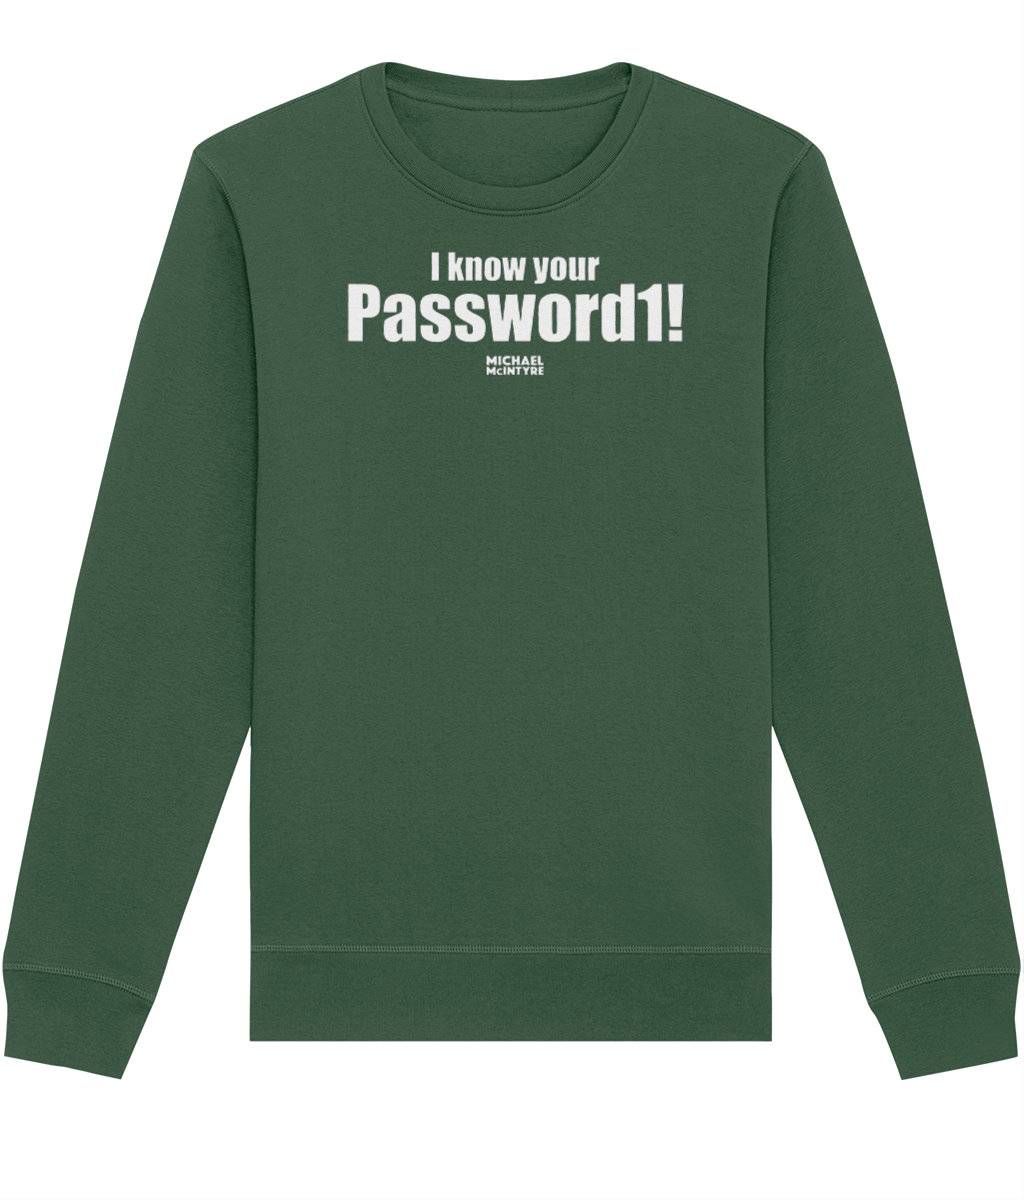 Password1! Sweatshirt